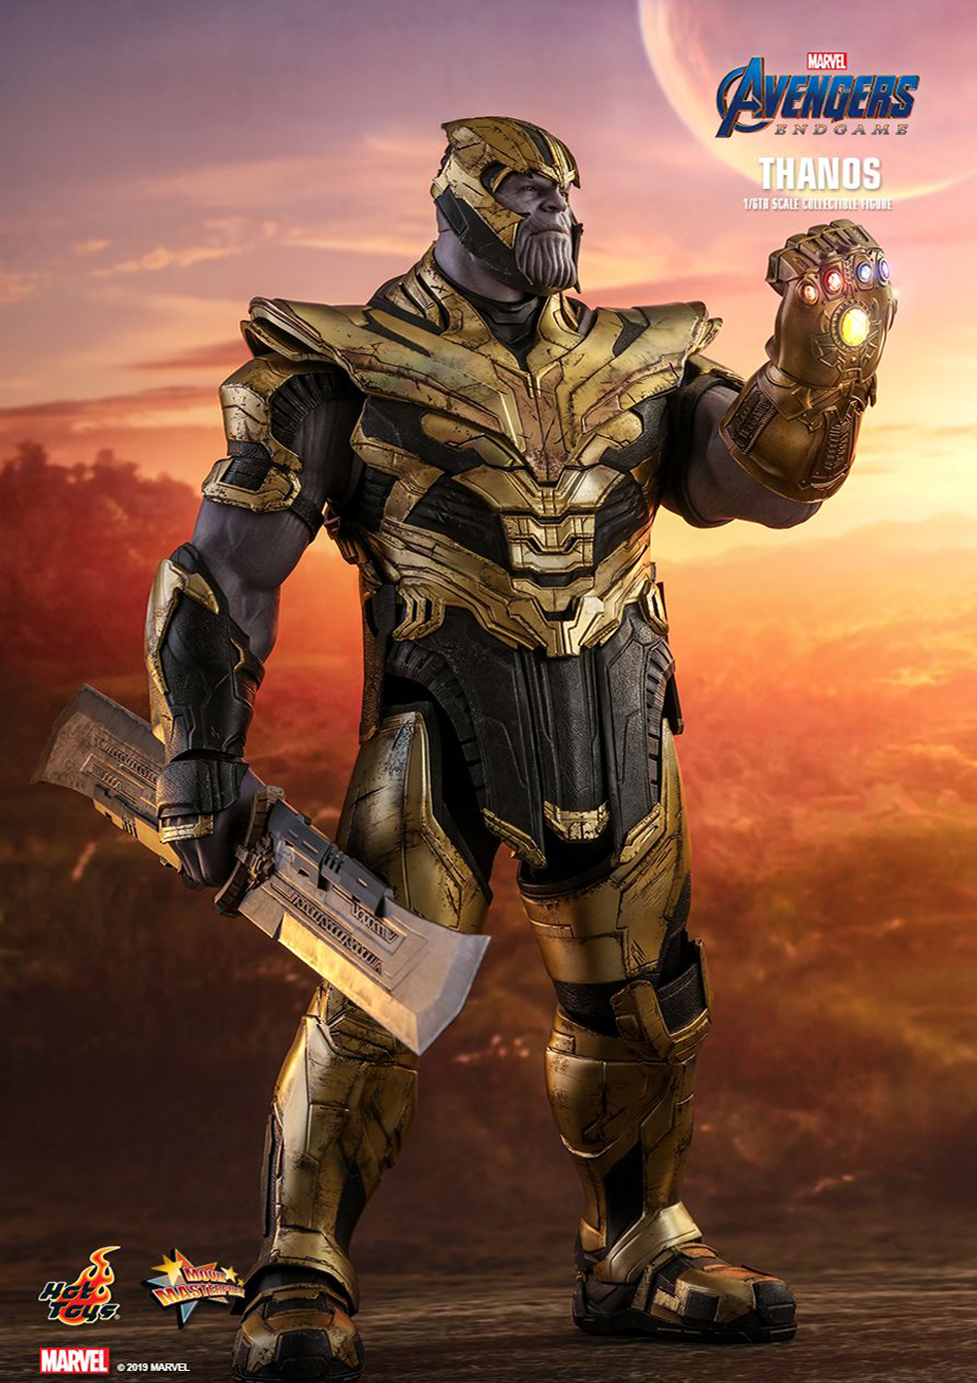 etc. Perseguir carga Thanos - Avengers: Endgame – Figuras Premium Guatemala